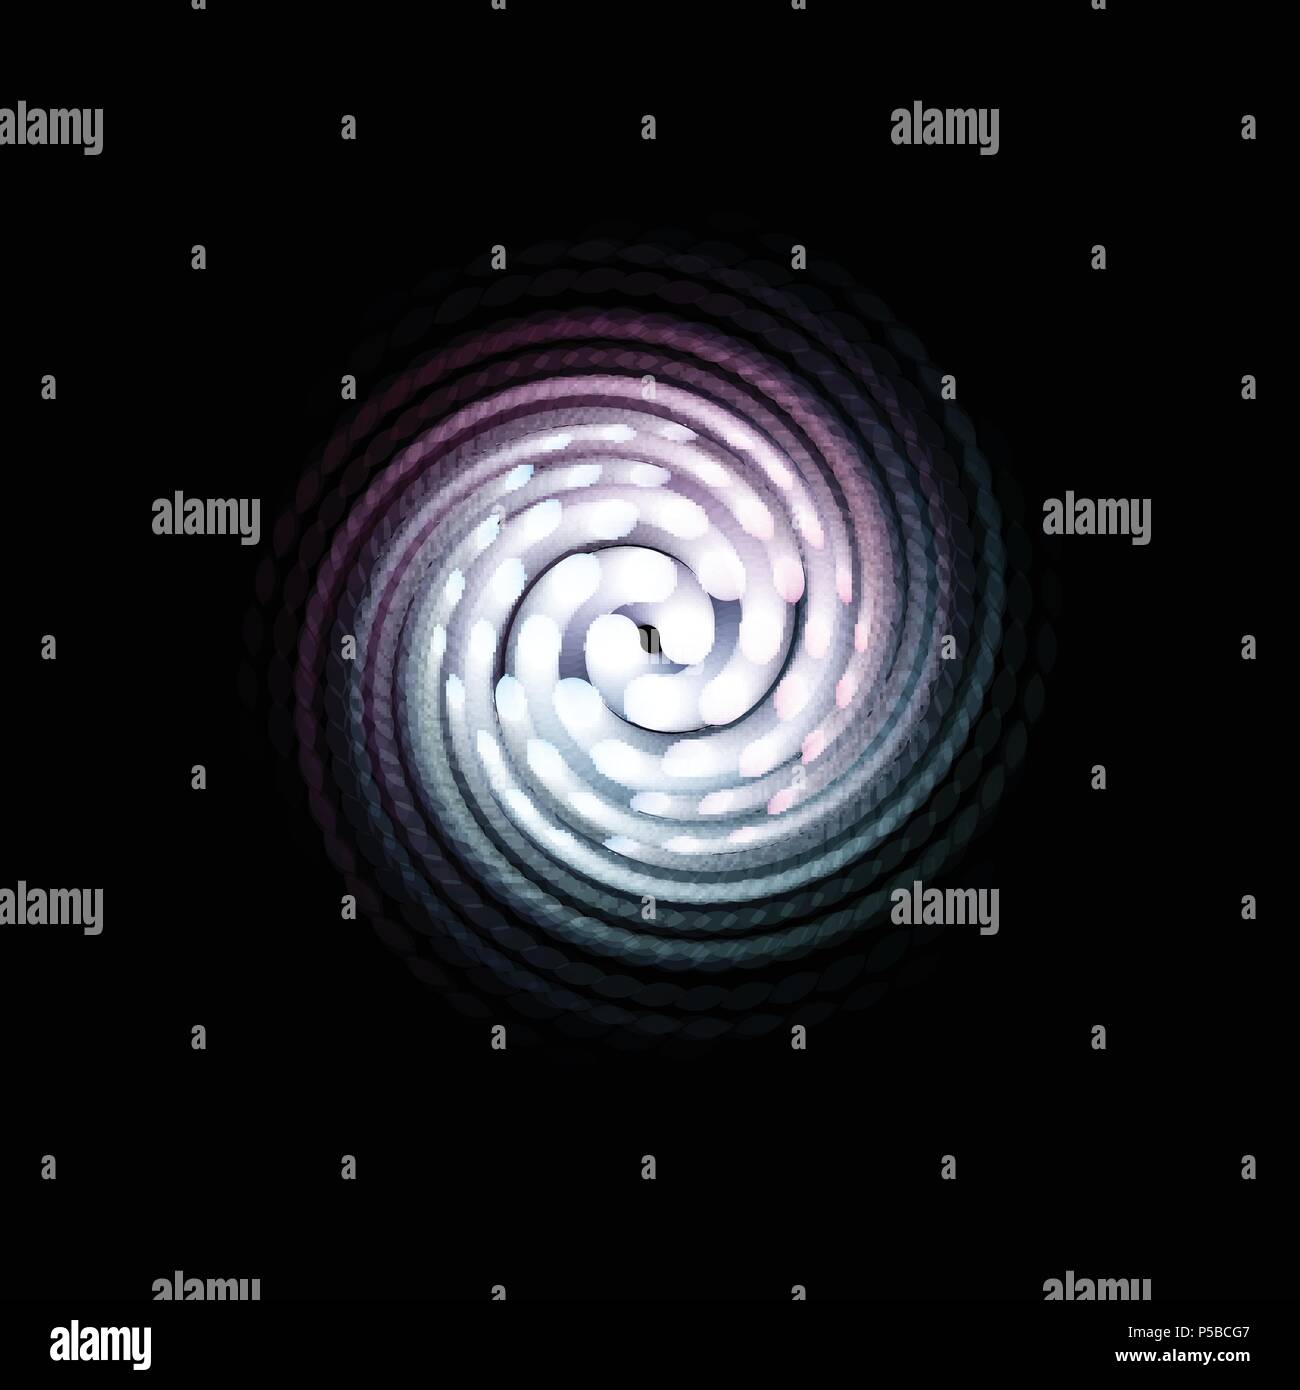 Galassia a spirale, astratto imbuto colorato, la magia di rotazione forma, uragano segno di movimento. Round punti attorcigliati logo. Abstract isolato illustrazione vettoriale su sfondo nero. Illustrazione Vettoriale